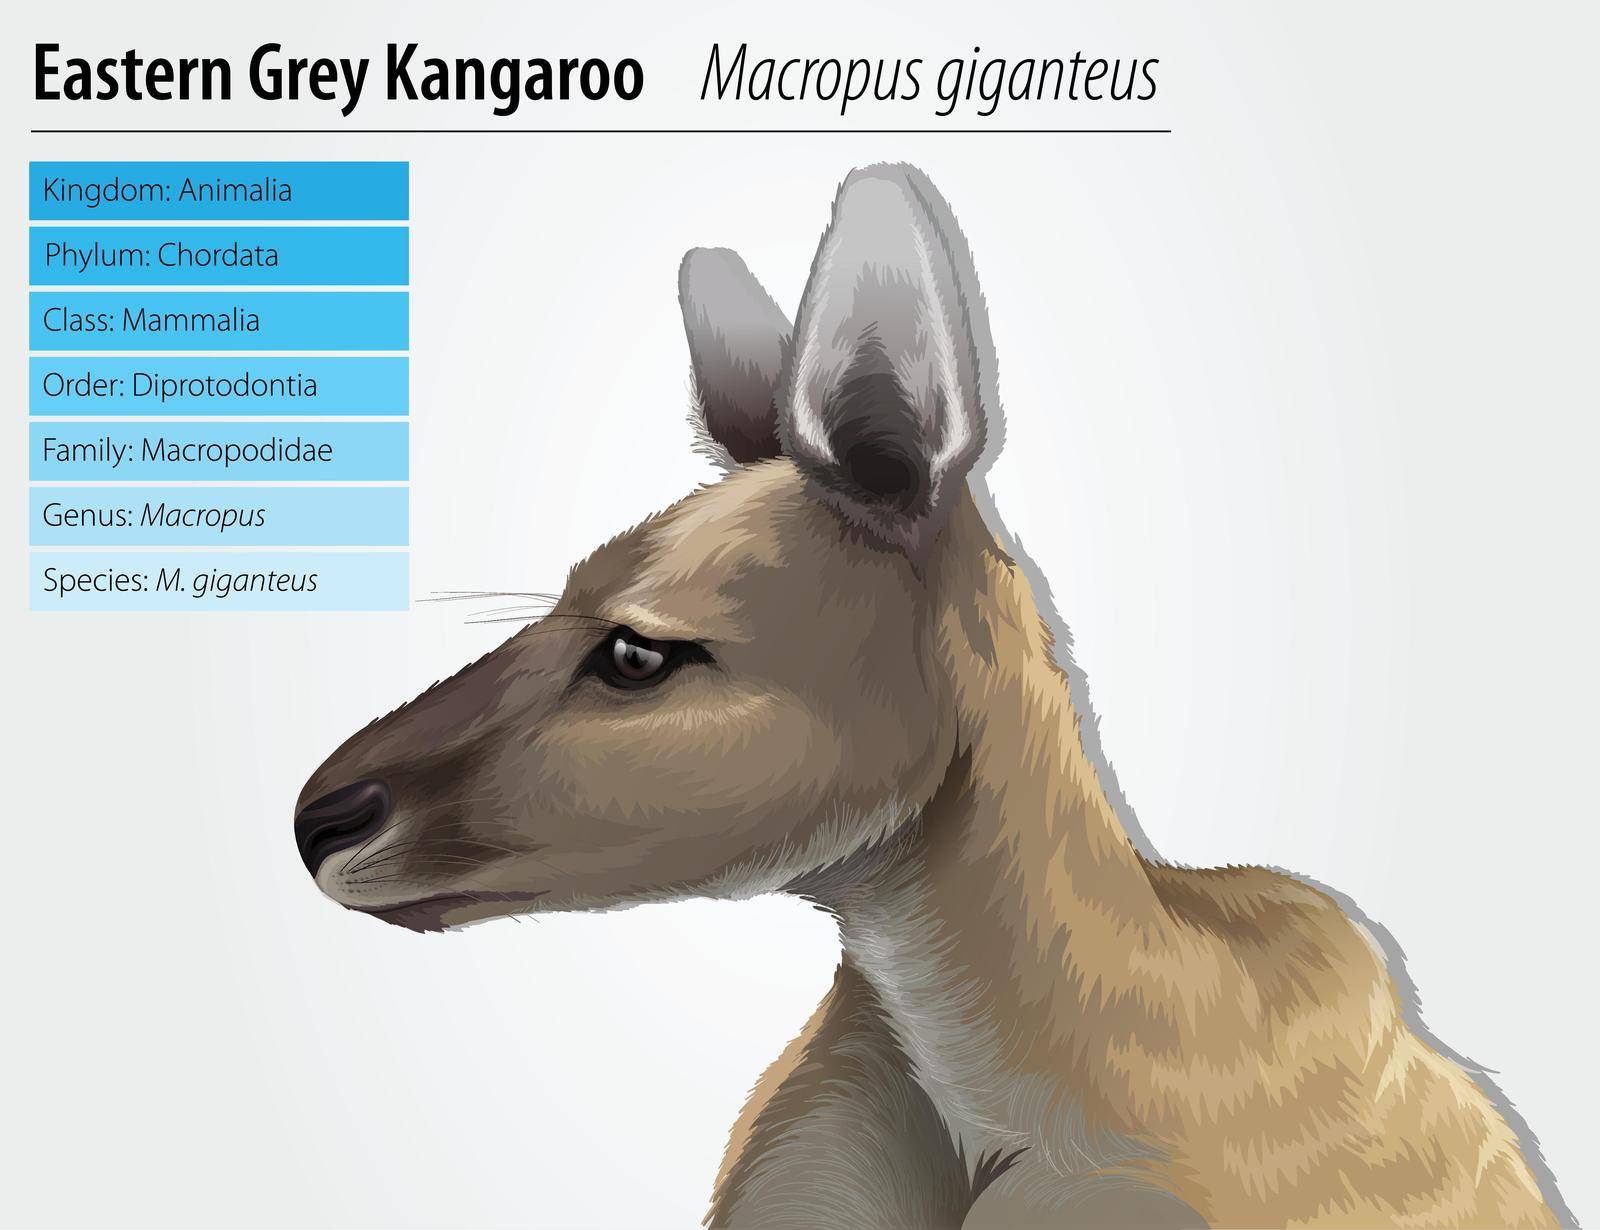 Eastern grey kangaroo by iimages